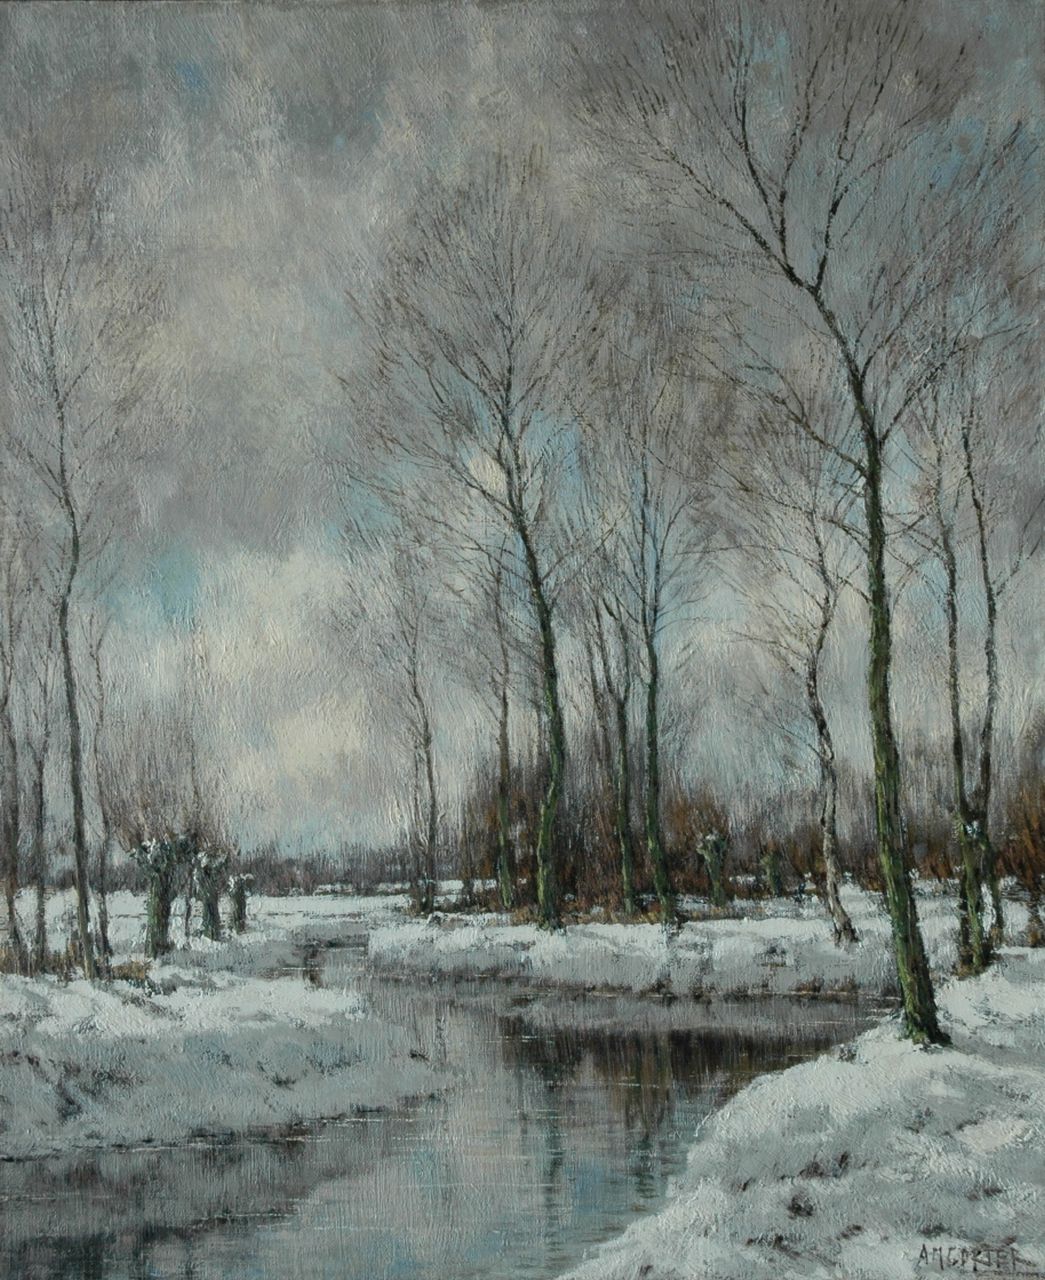 Gorter A.M.  | 'Arnold' Marc Gorter, The Vordense Beek in winter, Öl auf Leinwand 56,5 x 46,4 cm, signed l.r.